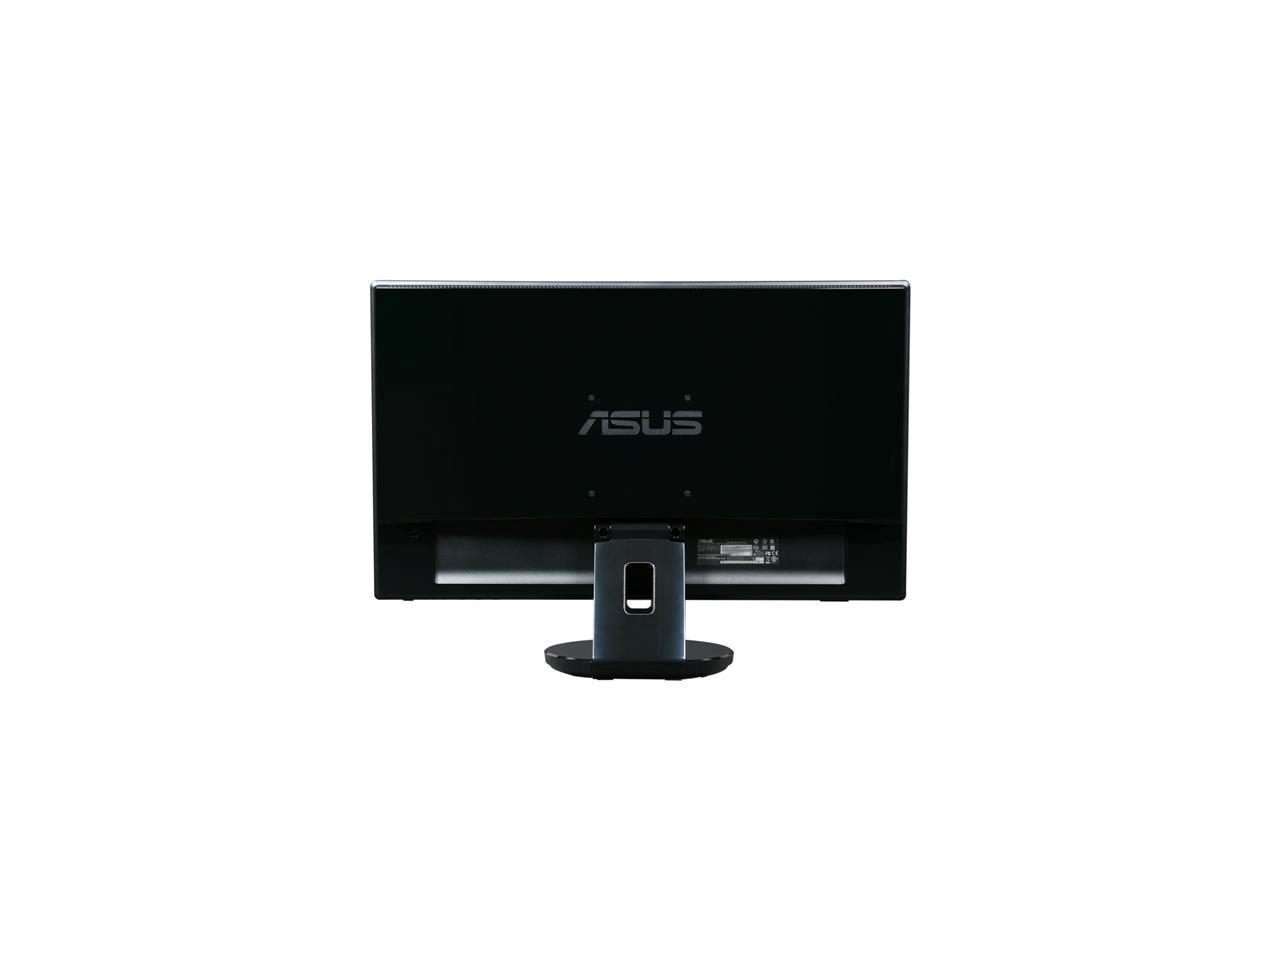 Asus ve247h monitor - masspor